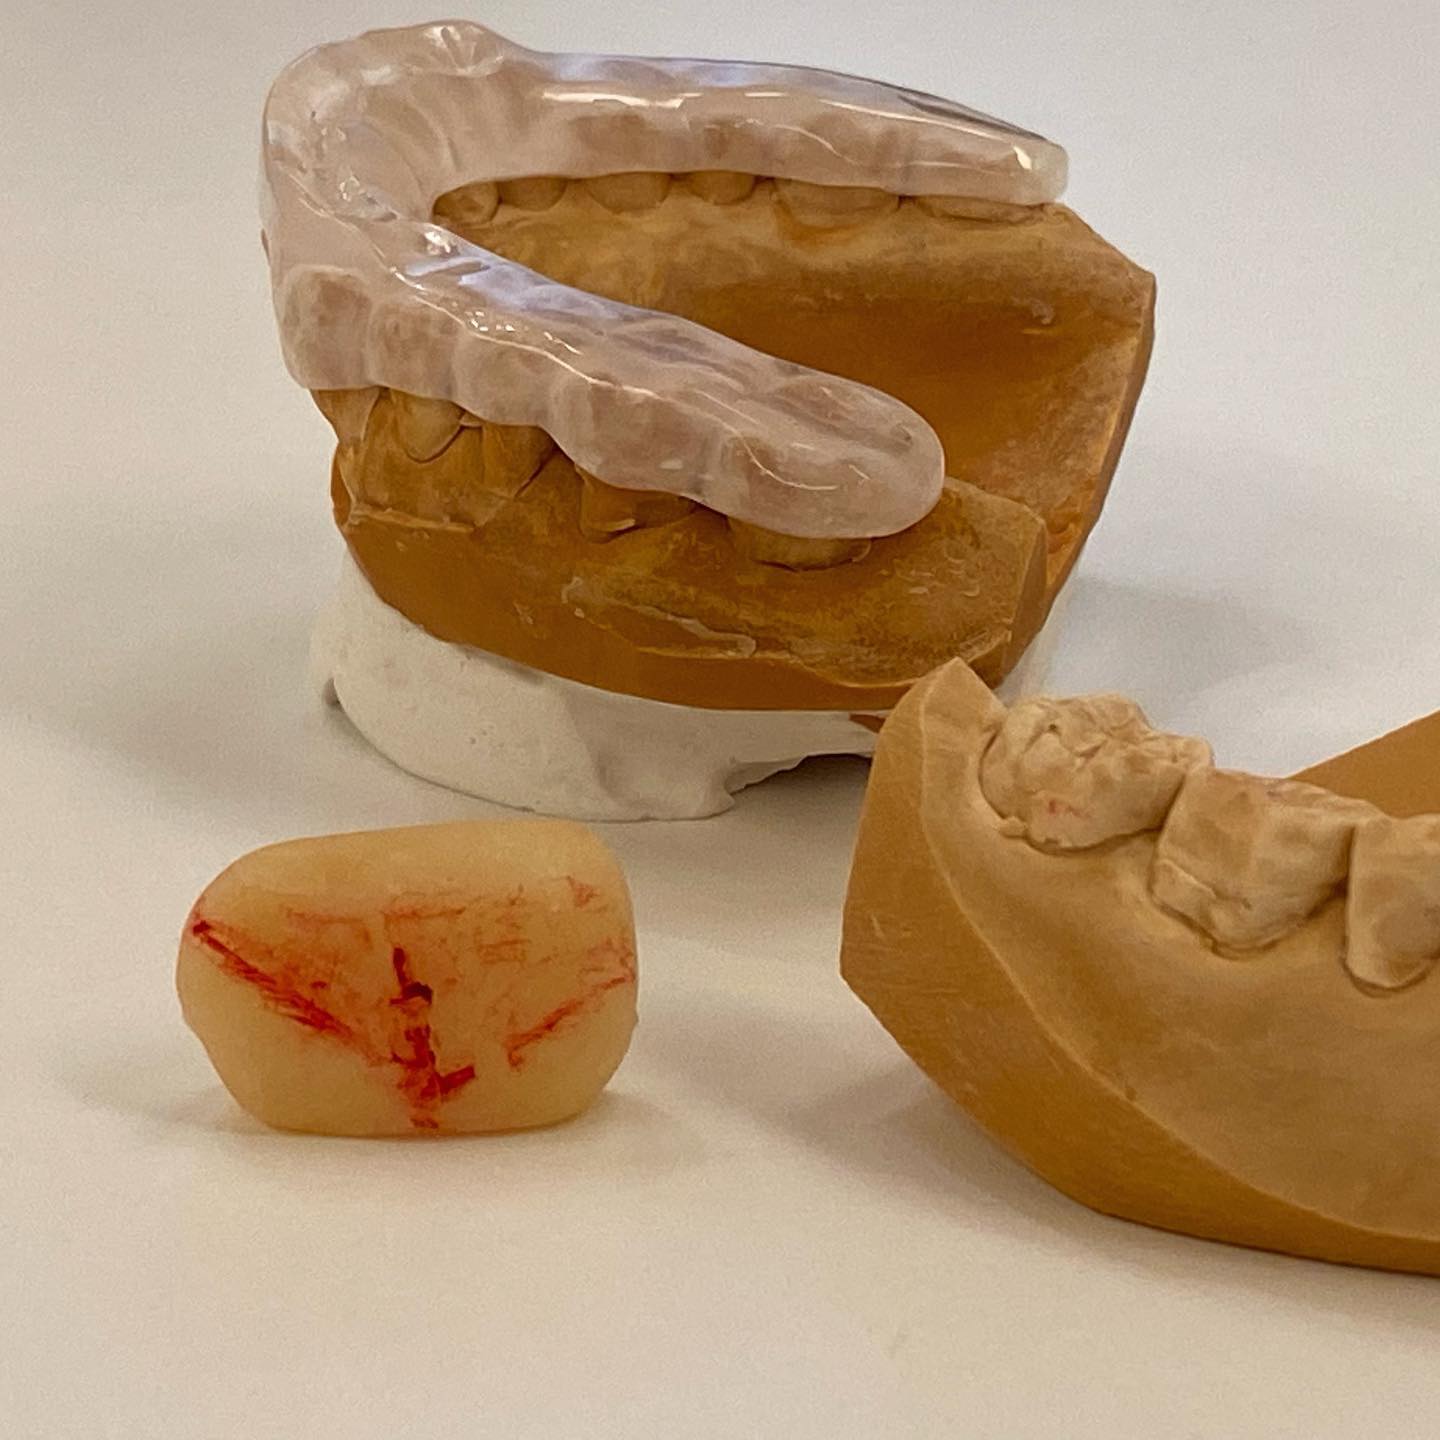 こんにちは🥳こちらは当院のこだわりのあるマウスピースです🦷とても腕の良い技工士さんに作っていただいてもらってます！！！院長は、患者さんの顎の動きをよく診て情報提供し技工士さんと連携していますスズメの足跡のような3本の赤い線が顎の動きの記録です🖊#東京ステーション歯科クリニック #東京駅 #東京駅歯科 #歯科医師 #歯科技工士 #歯科衛生士 #歯科助手#歯科技工物 #スプリント #マウスピース #噛み合わせ #咬合